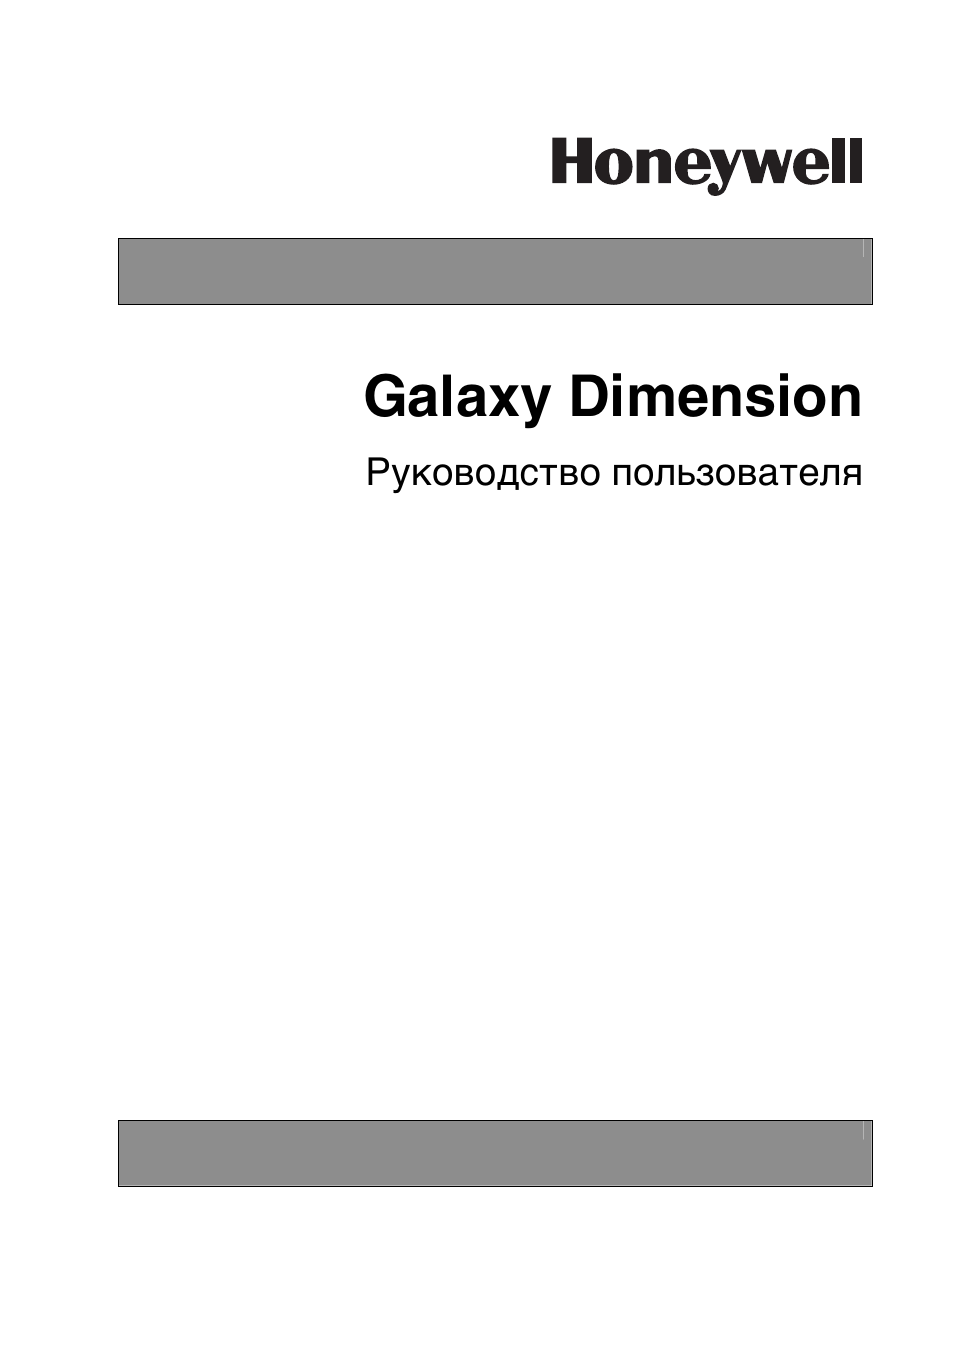 Инструкция по эксплуатации Honeywell Руководство пользователя контрольных панелей серии Galaxy Dimension | 39 страниц